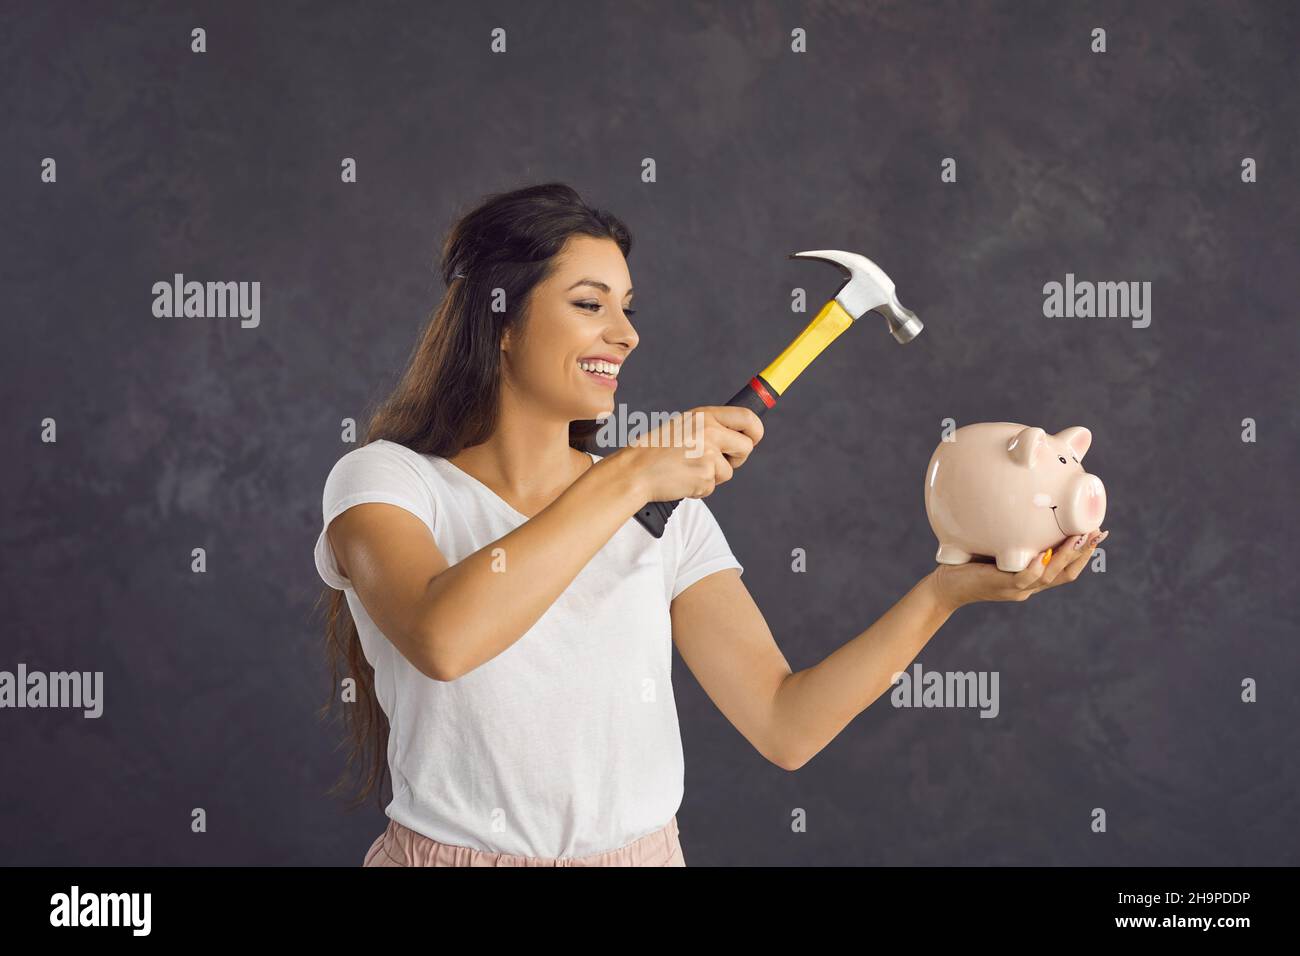 Eine glückliche Frau mit einem Hammer in den Händen wird das Sparschwein brechen, das sie in ihren Händen hält. Stockfoto